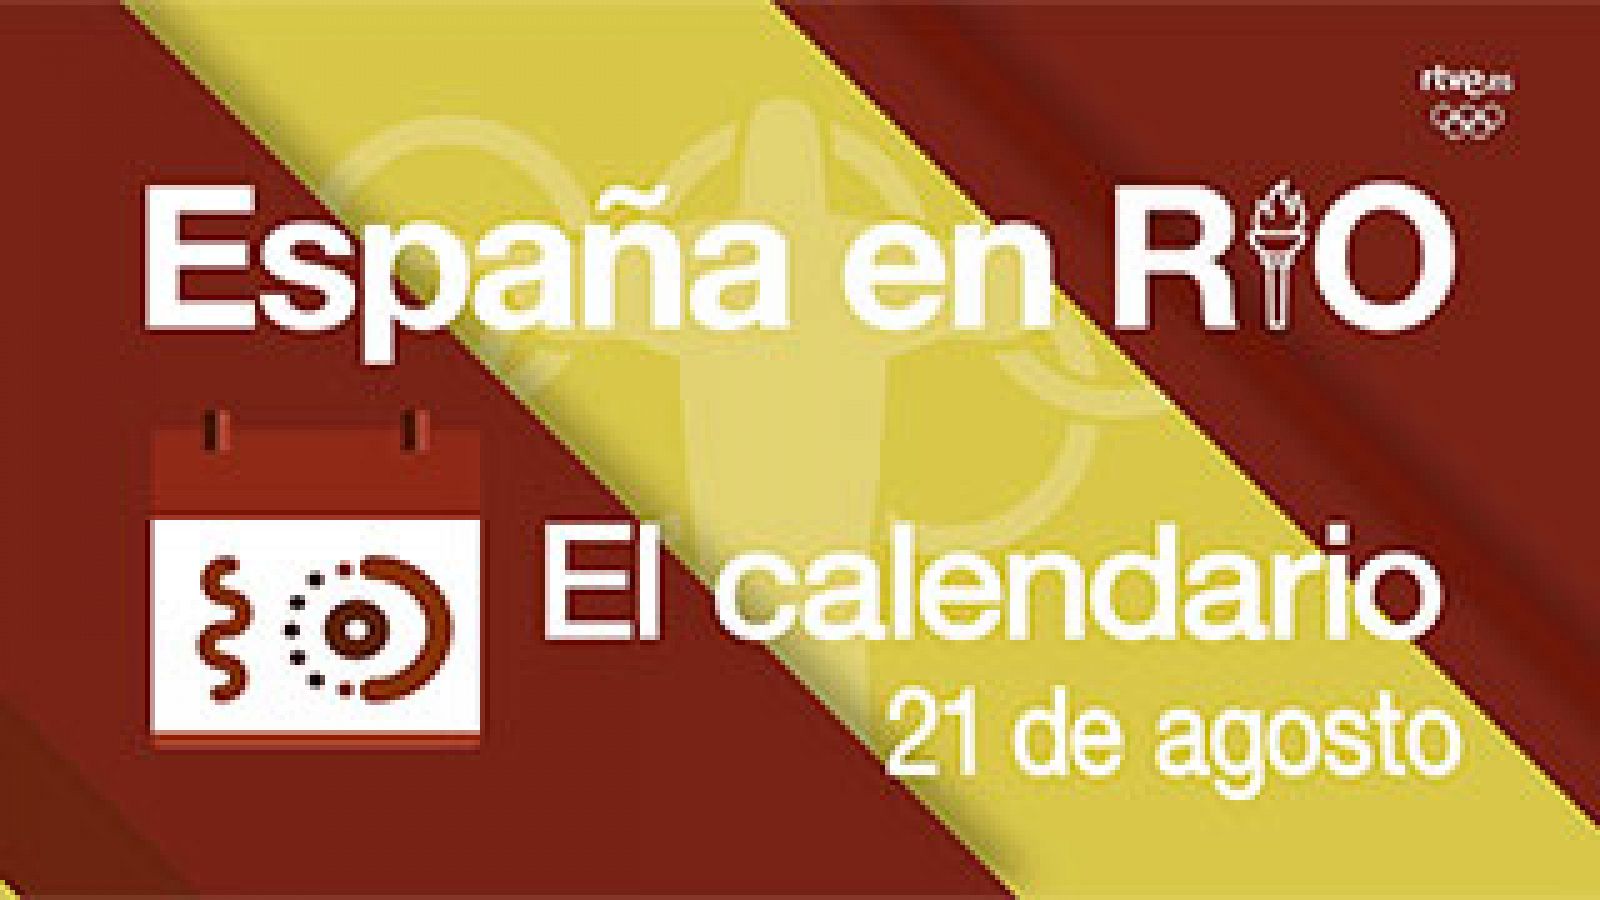 España en Río - 21 de agosto